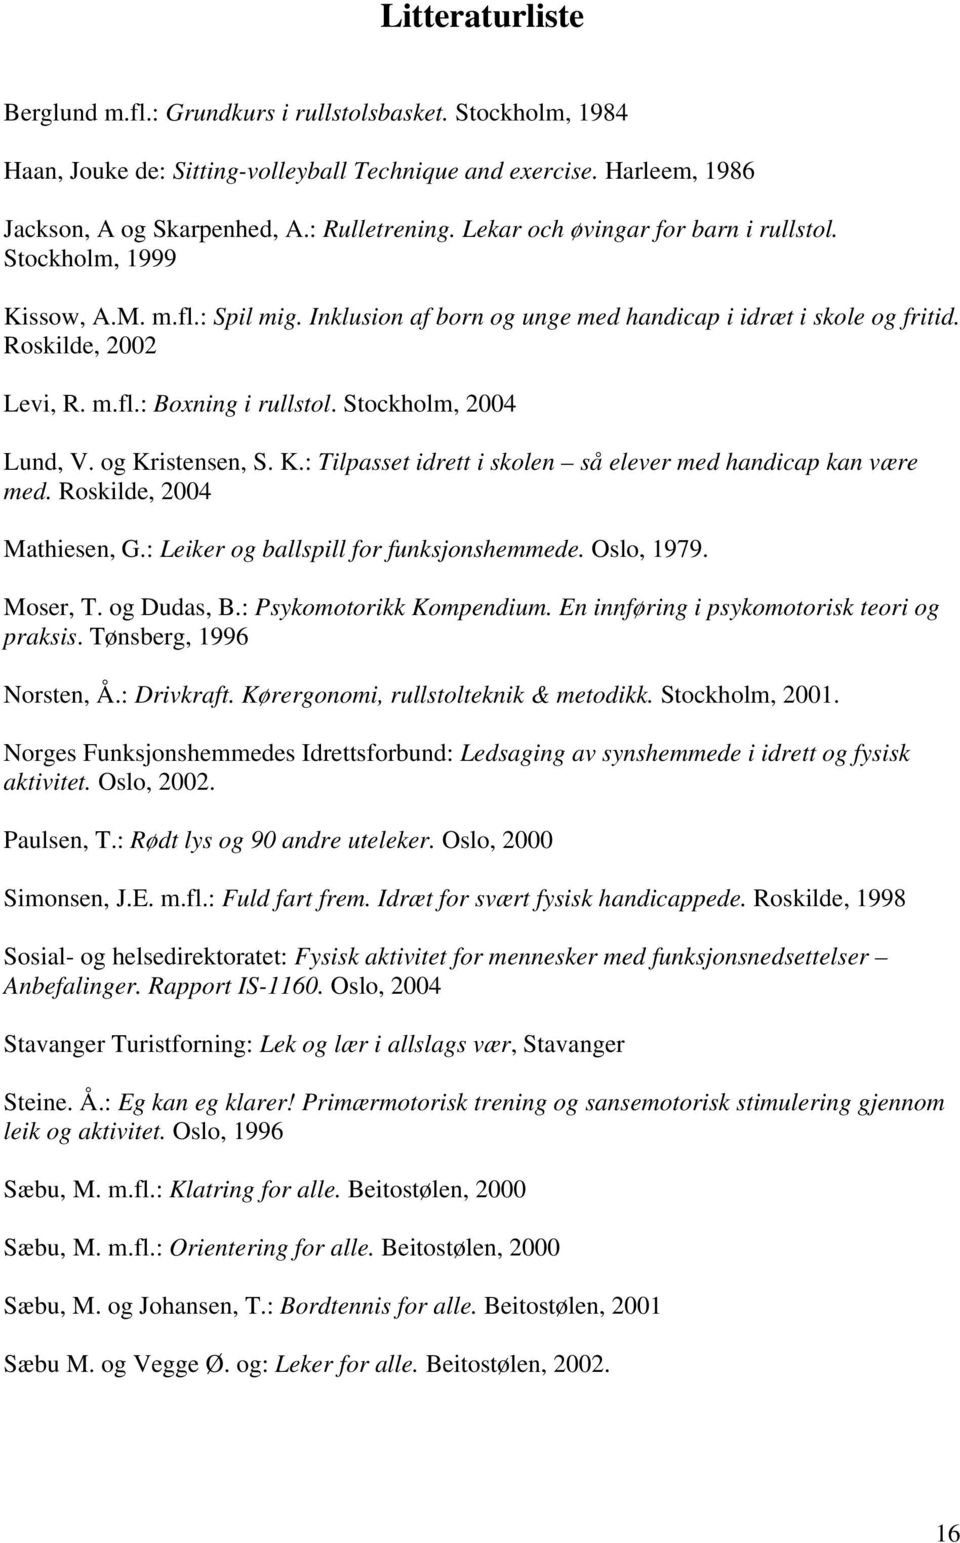 Stockholm, 2004 Lund, V. og Kristensen, S. K.: Tilpasset idrett i skolen så elever med handicap kan være med. Roskilde, 2004 Mathiesen, G.: Leiker og ballspill for funksjonshemmede. Oslo, 1979.